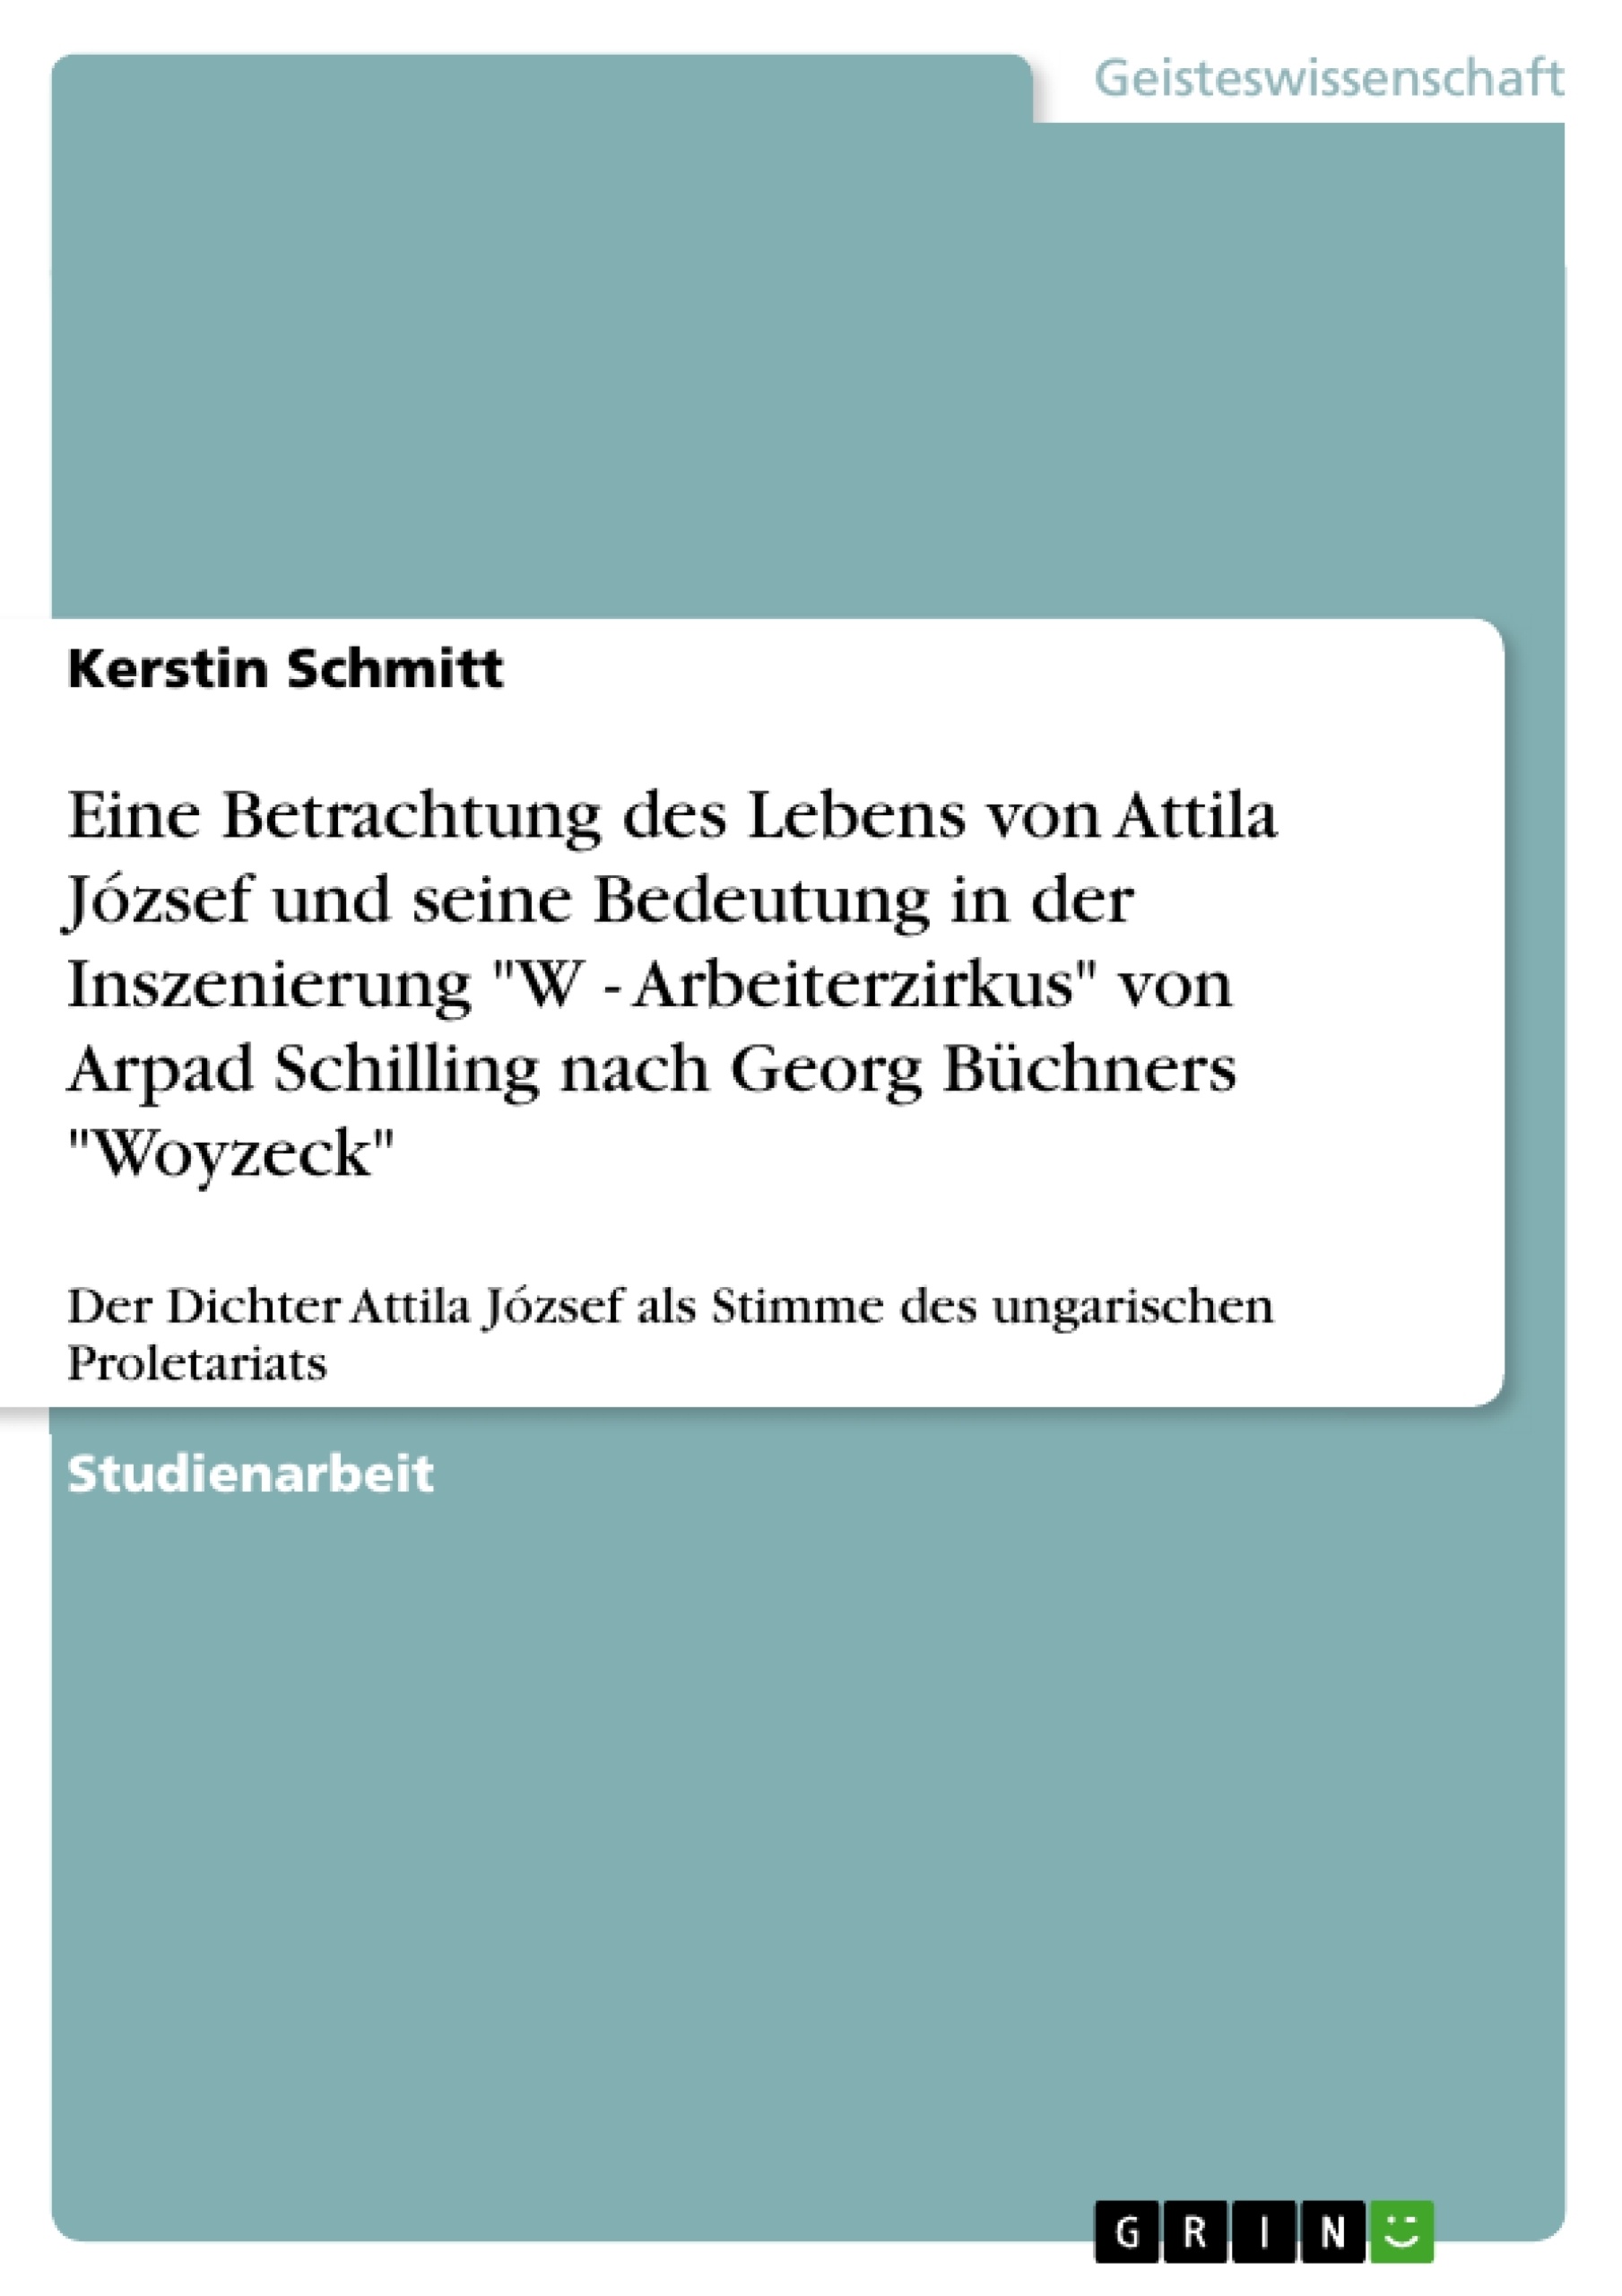 Titel: Eine Betrachtung des Lebens von Attila József und seine Bedeutung in der Inszenierung  "W - Arbeiterzirkus" von Arpad Schilling nach Georg Büchners "Woyzeck"